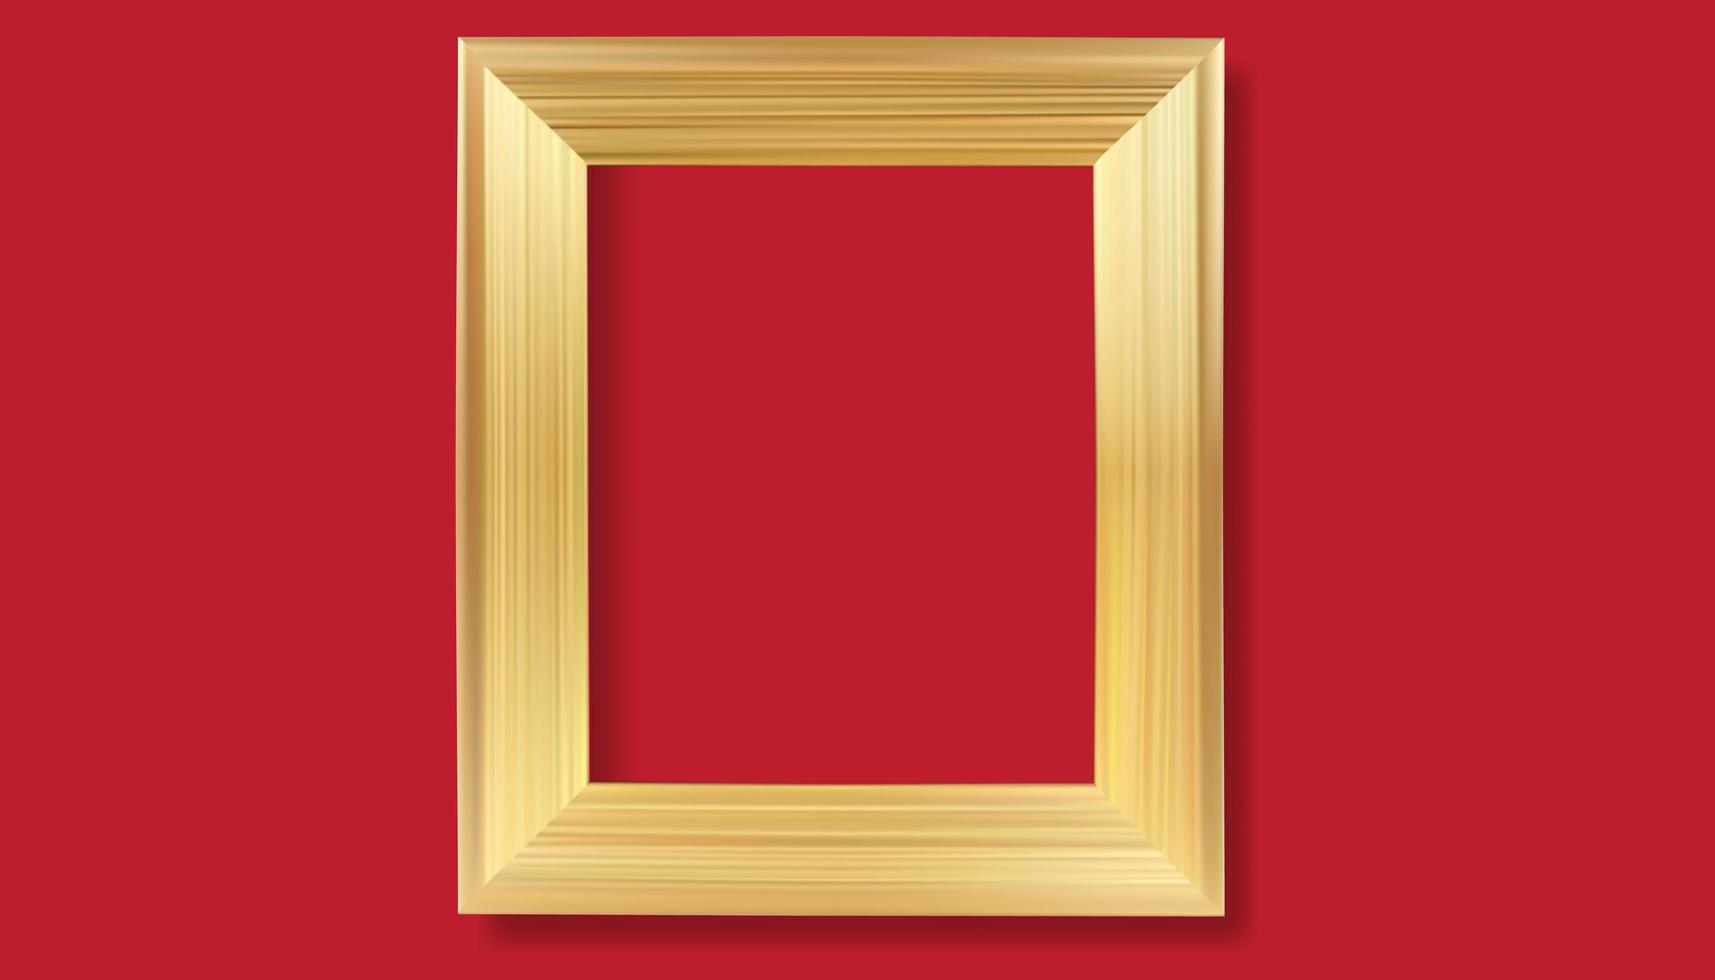 moldura de ouro sobre fundo vermelho. vetor realista isolado dourado brilhante brilhante borda armação.